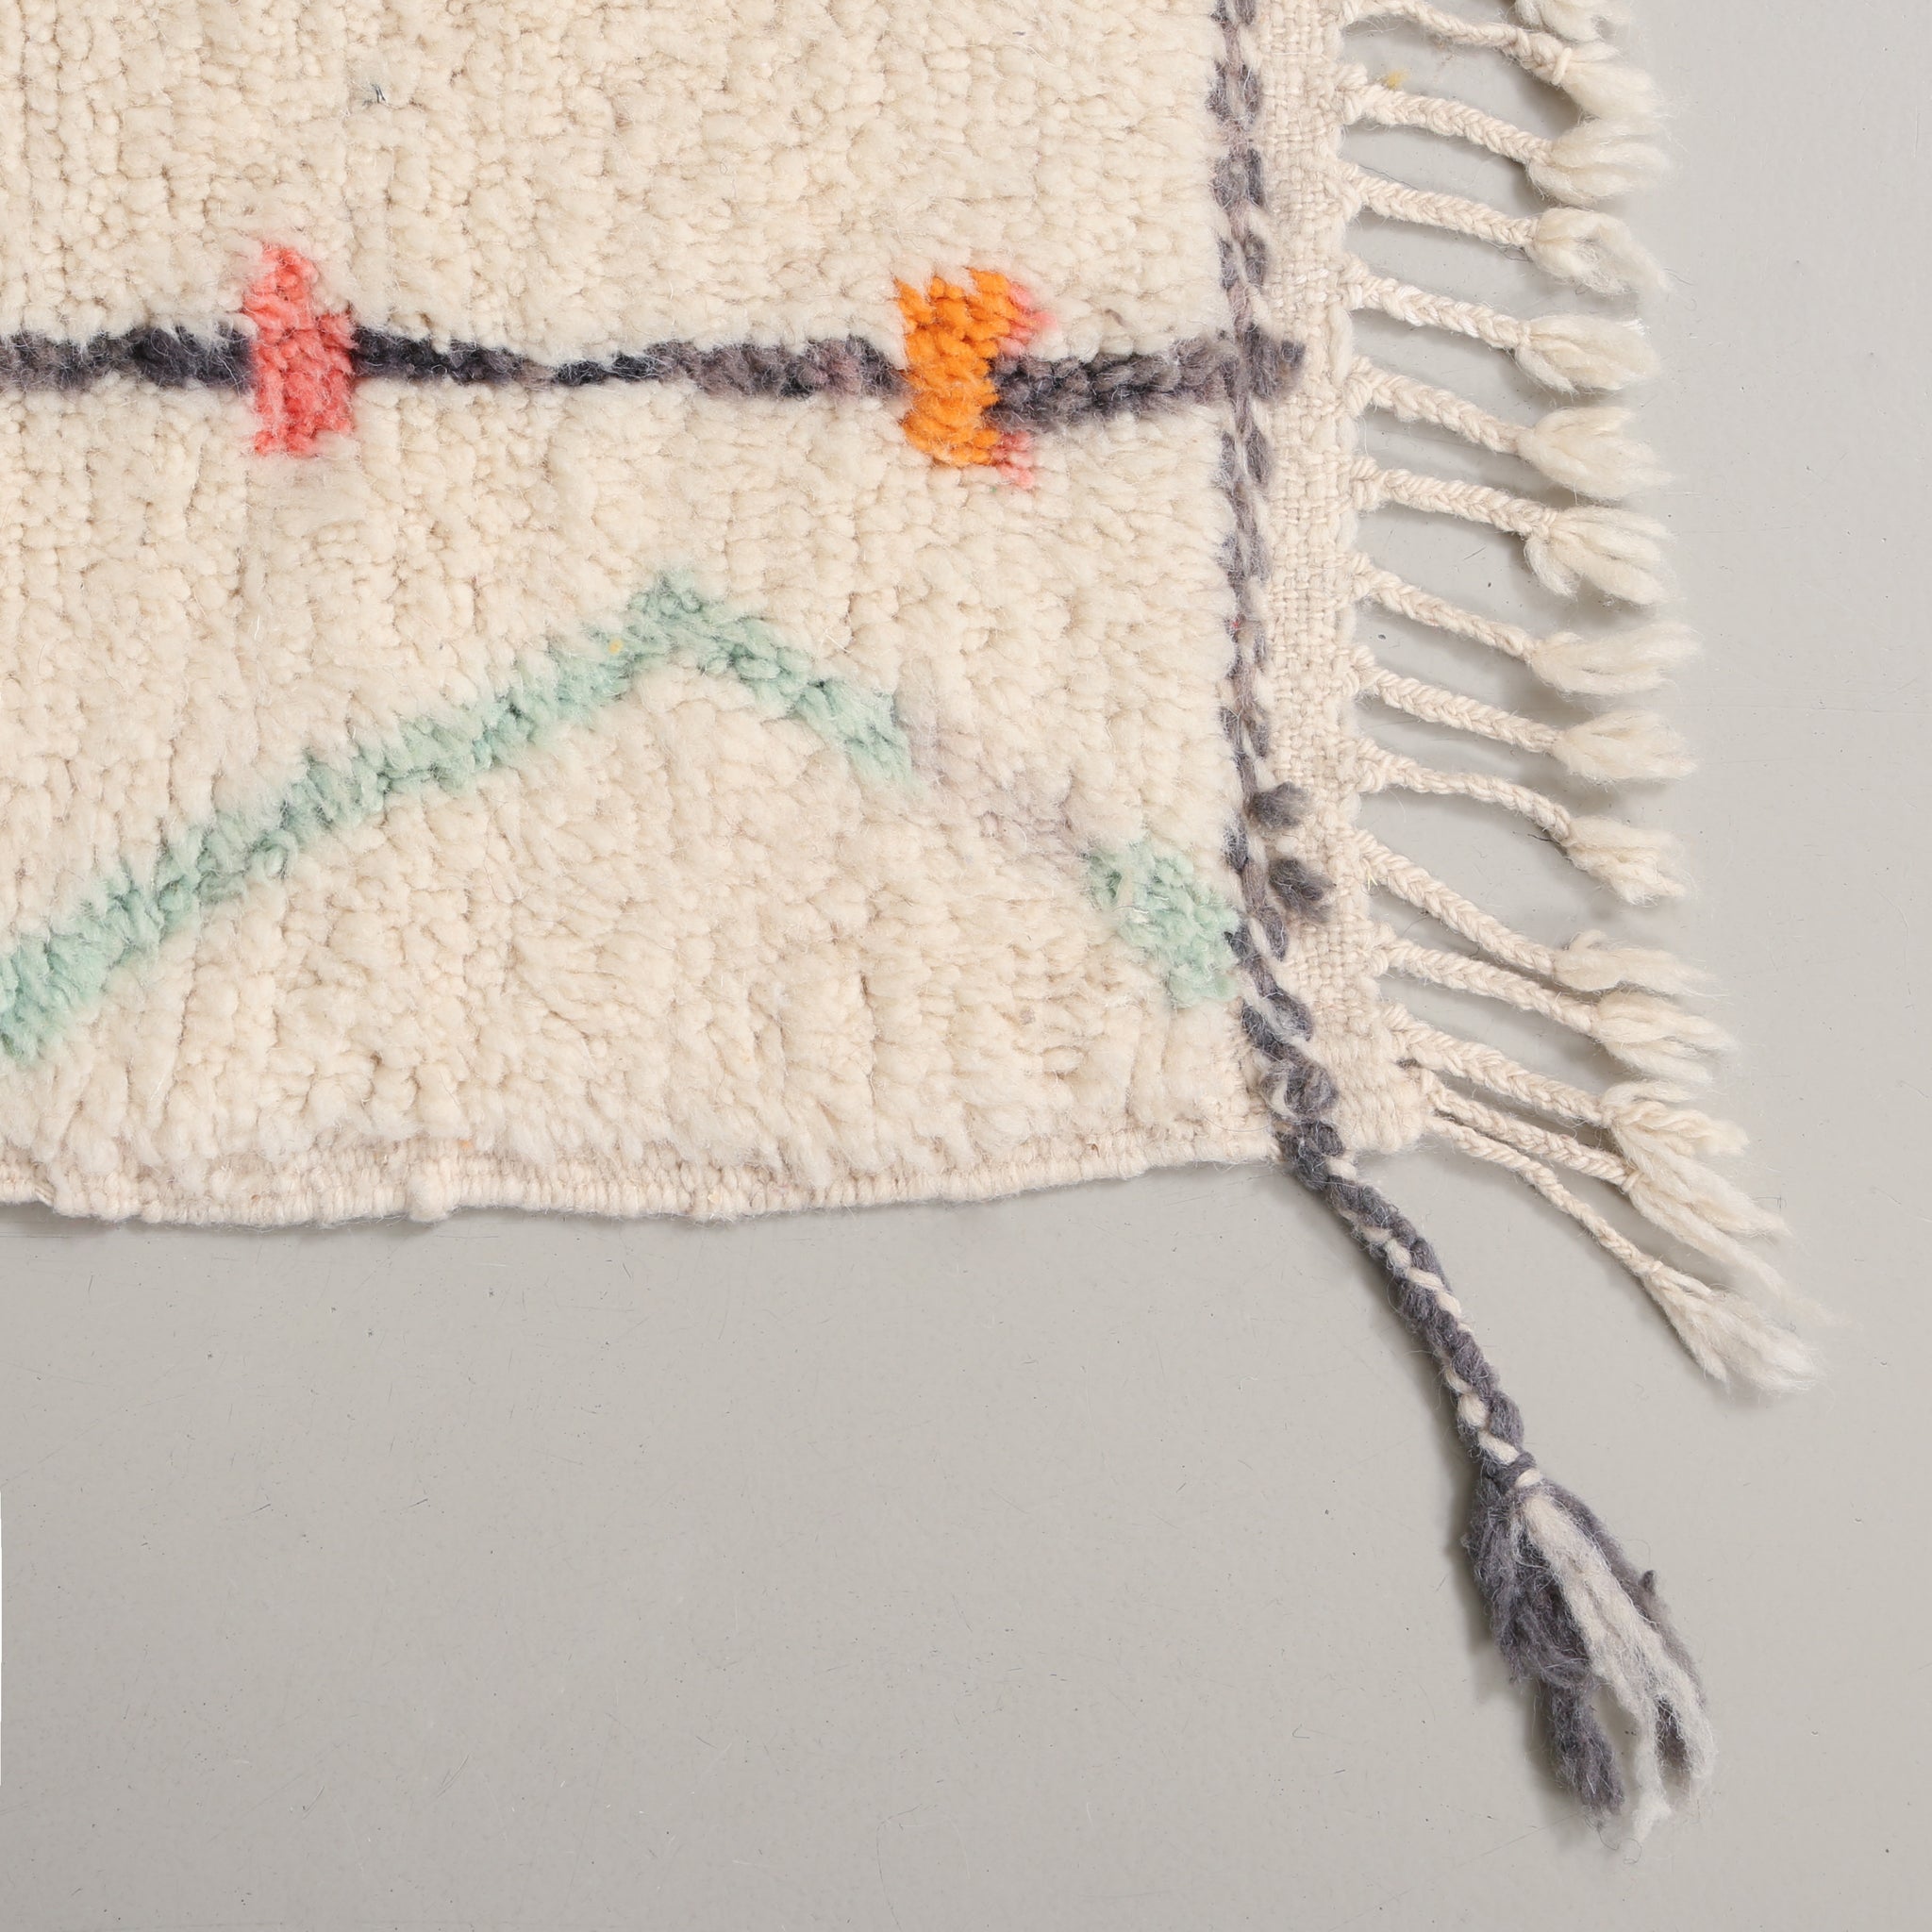 Angolo di un tappeto azilal. si notano la lana morbida del pelo, i colori pastello e la frangia